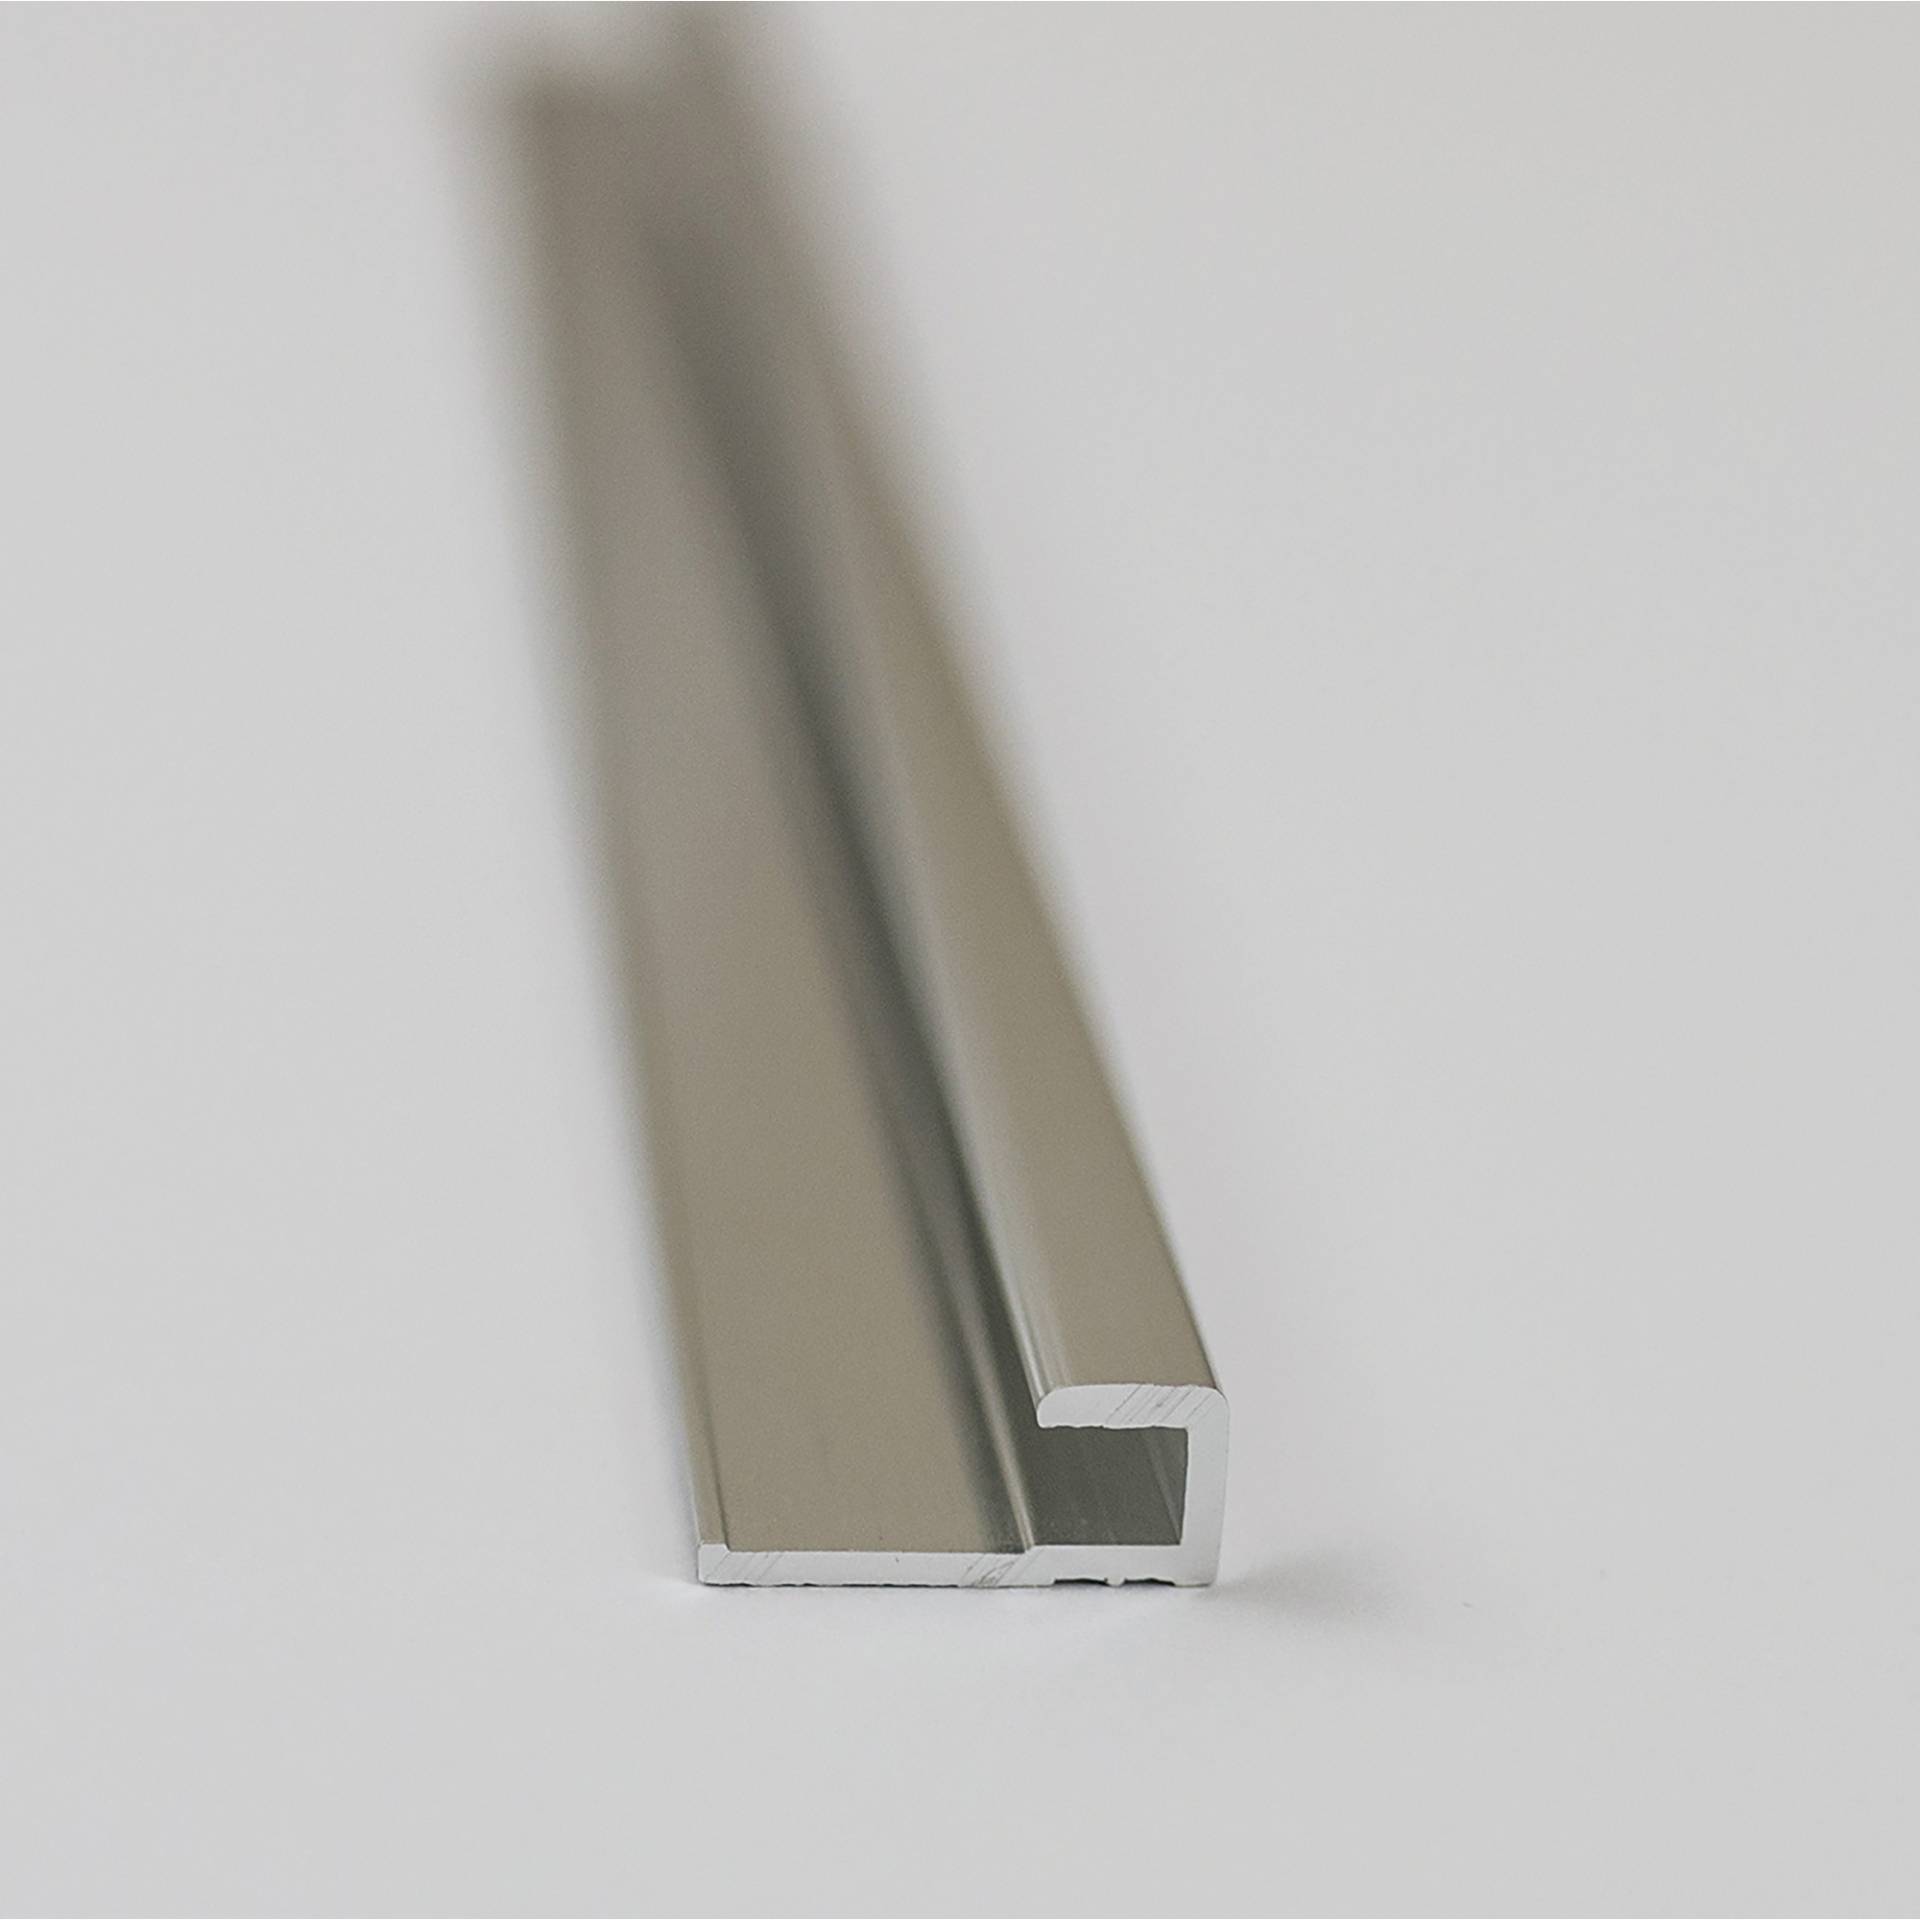 Breuer Abschlussprofil für Rückwandplatten, eckig, alu chromeffekt, 2550 mm von Breuer